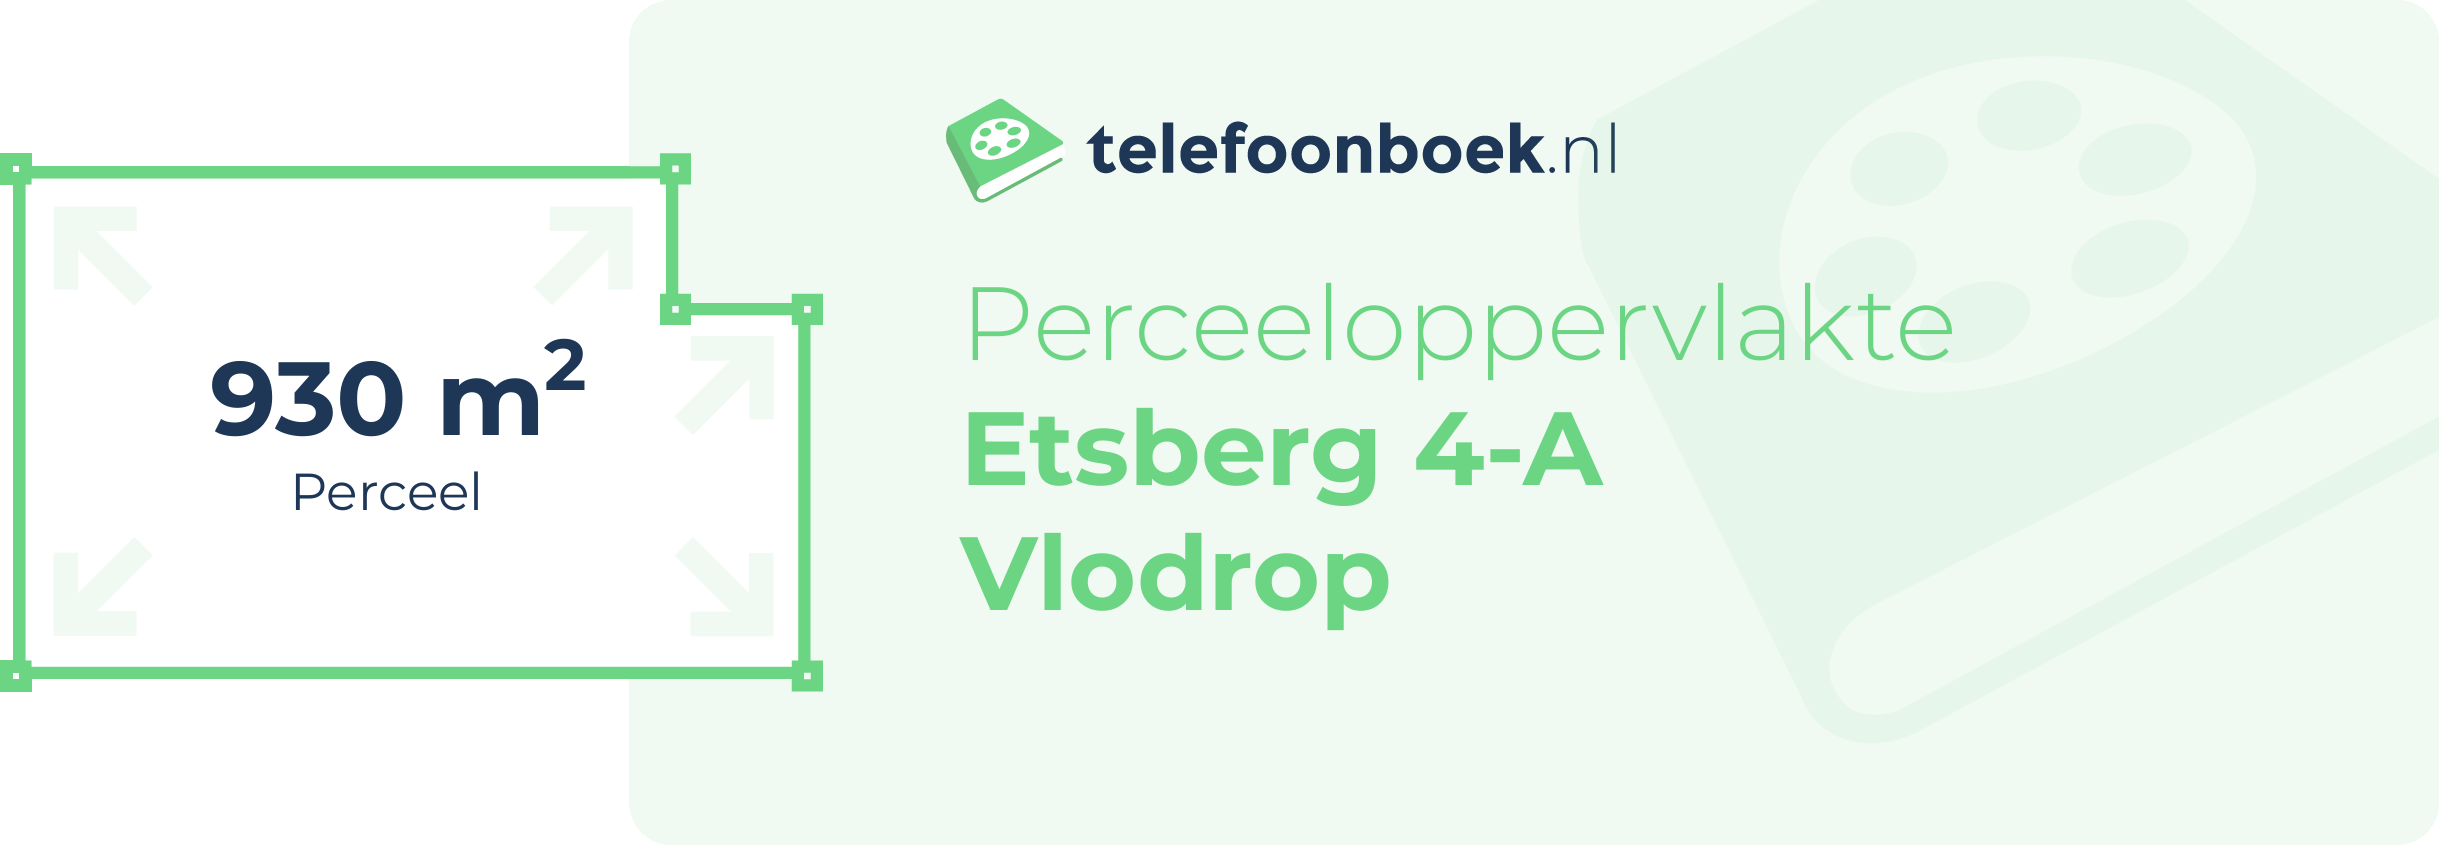 Perceeloppervlakte Etsberg 4-A Vlodrop